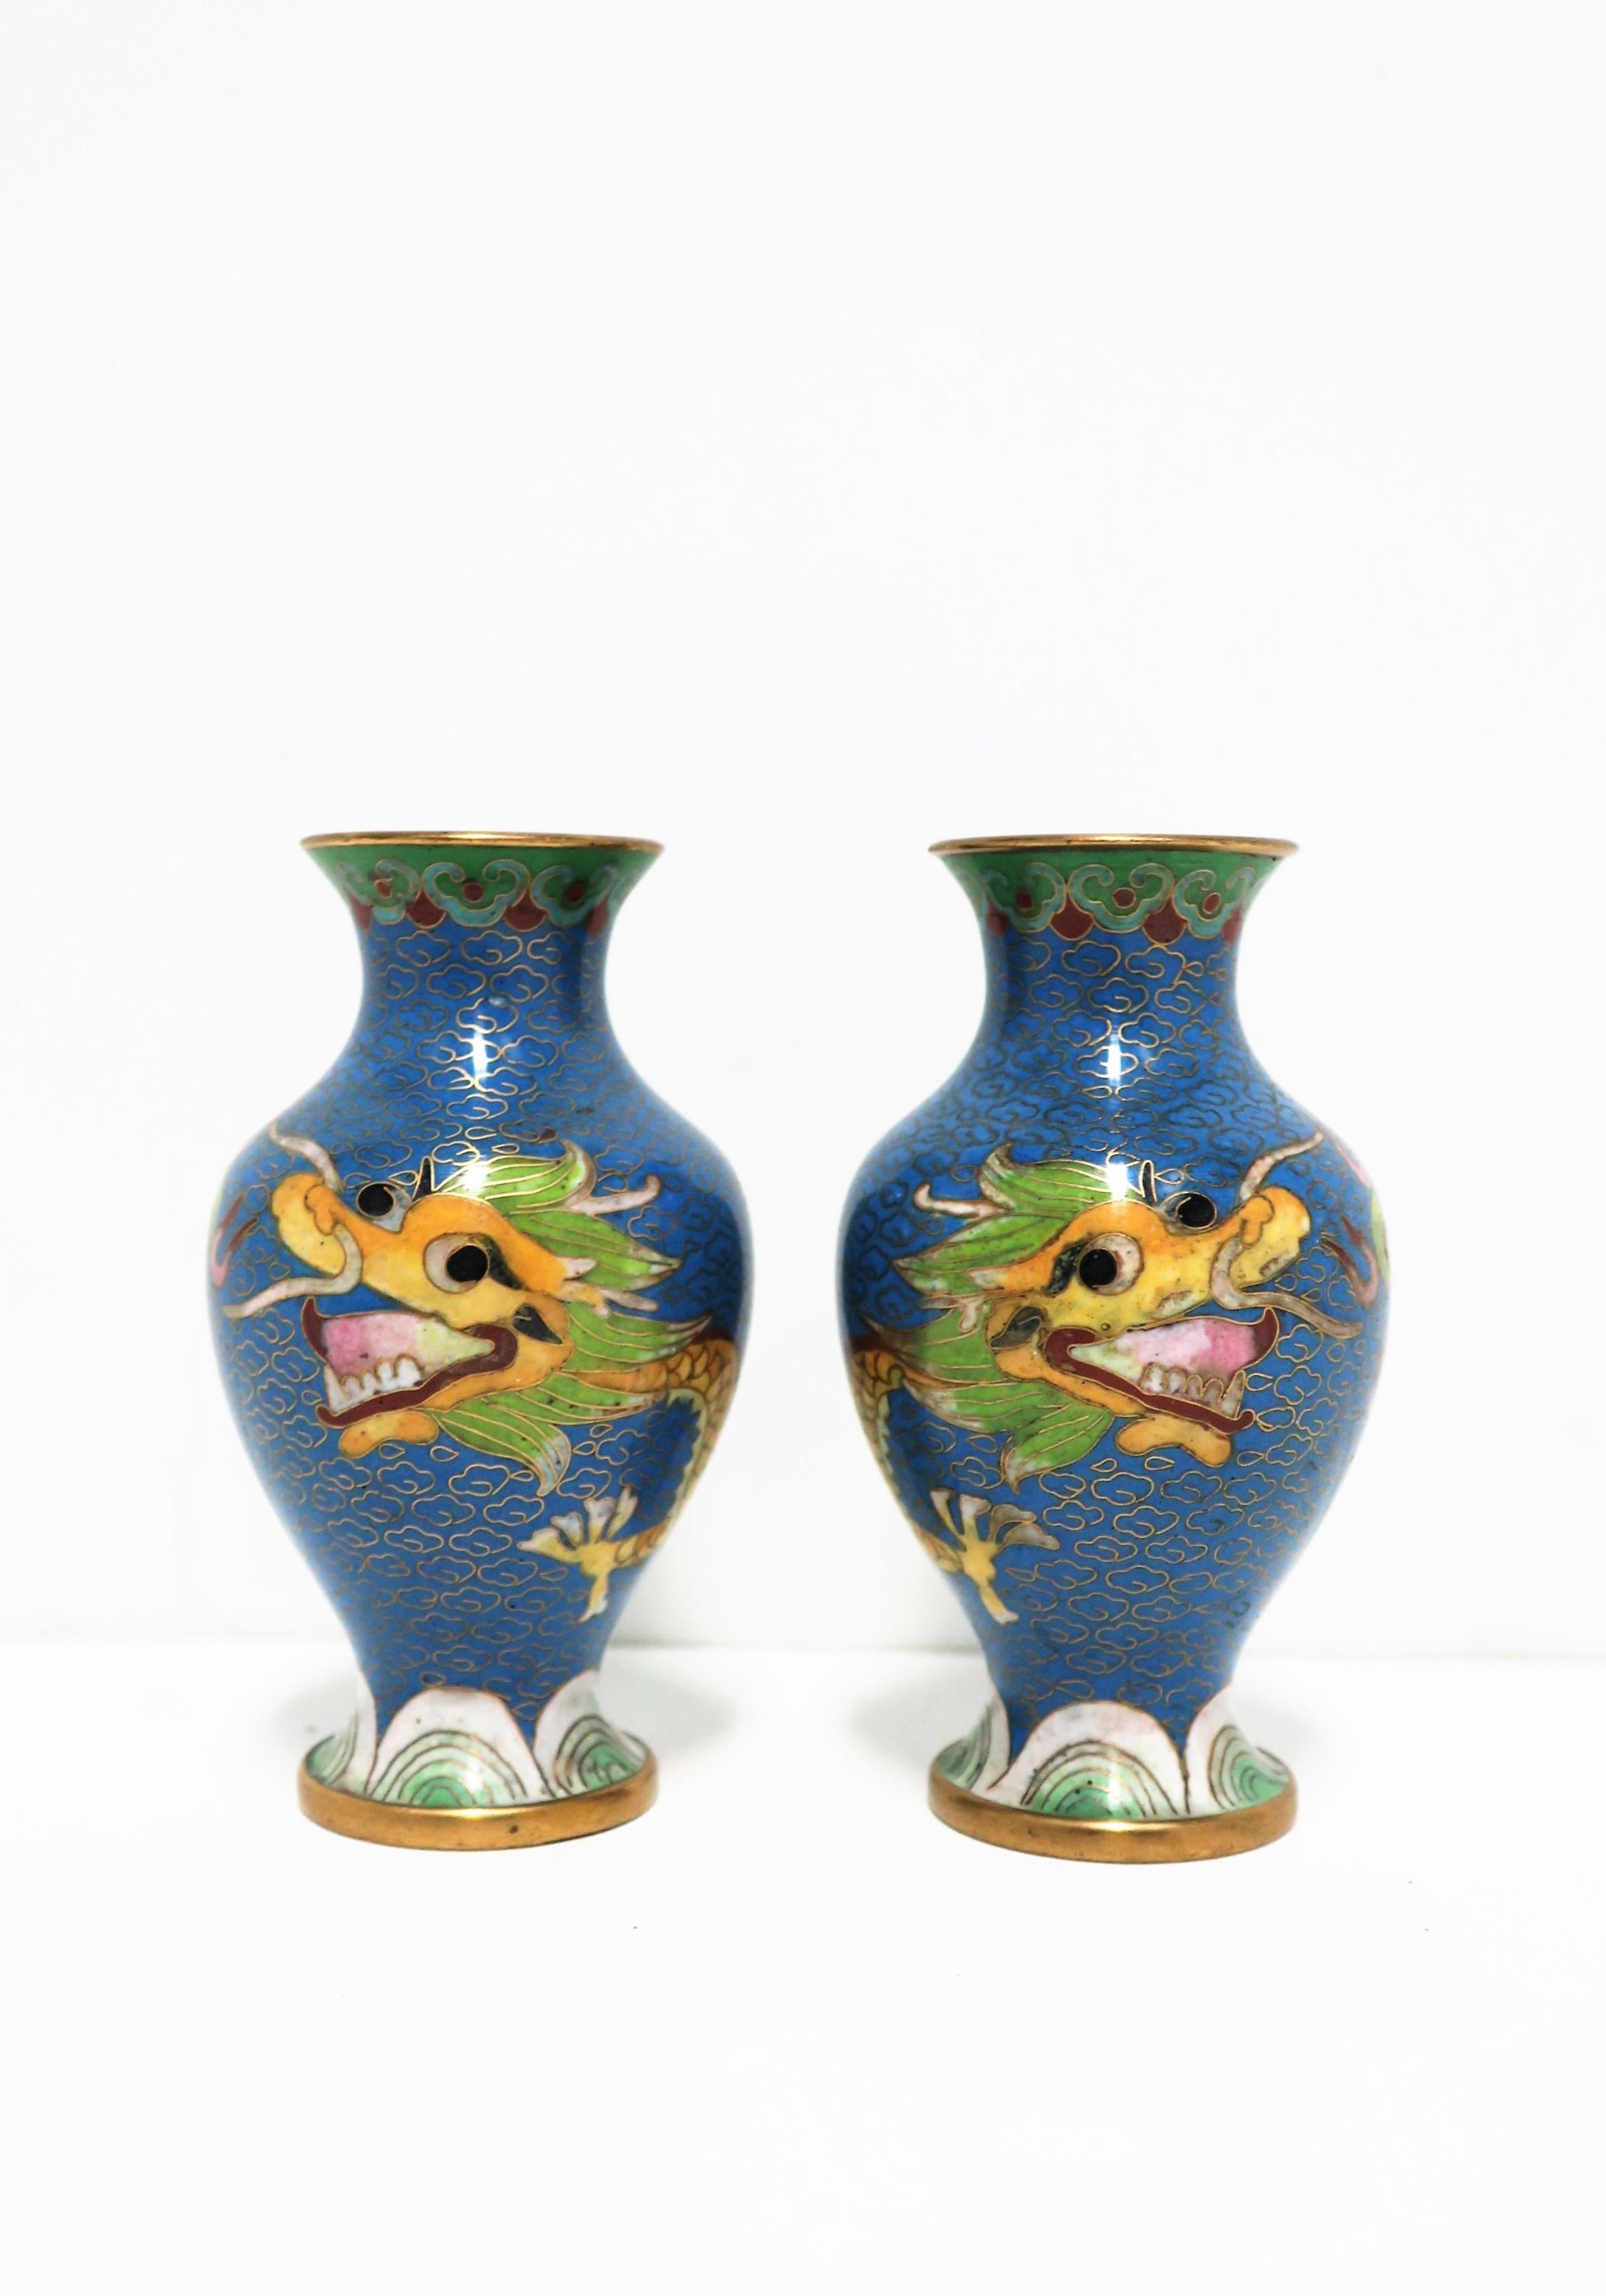 Très belle paire de vases chinois en laiton et émail cloisonné à motif de dragon, vers le début ou le milieu du XXe siècle, Chine. Les vases sont principalement bleus ; les autres couleurs comprennent le blanc, le vert, le noir, le rose, le rouge,